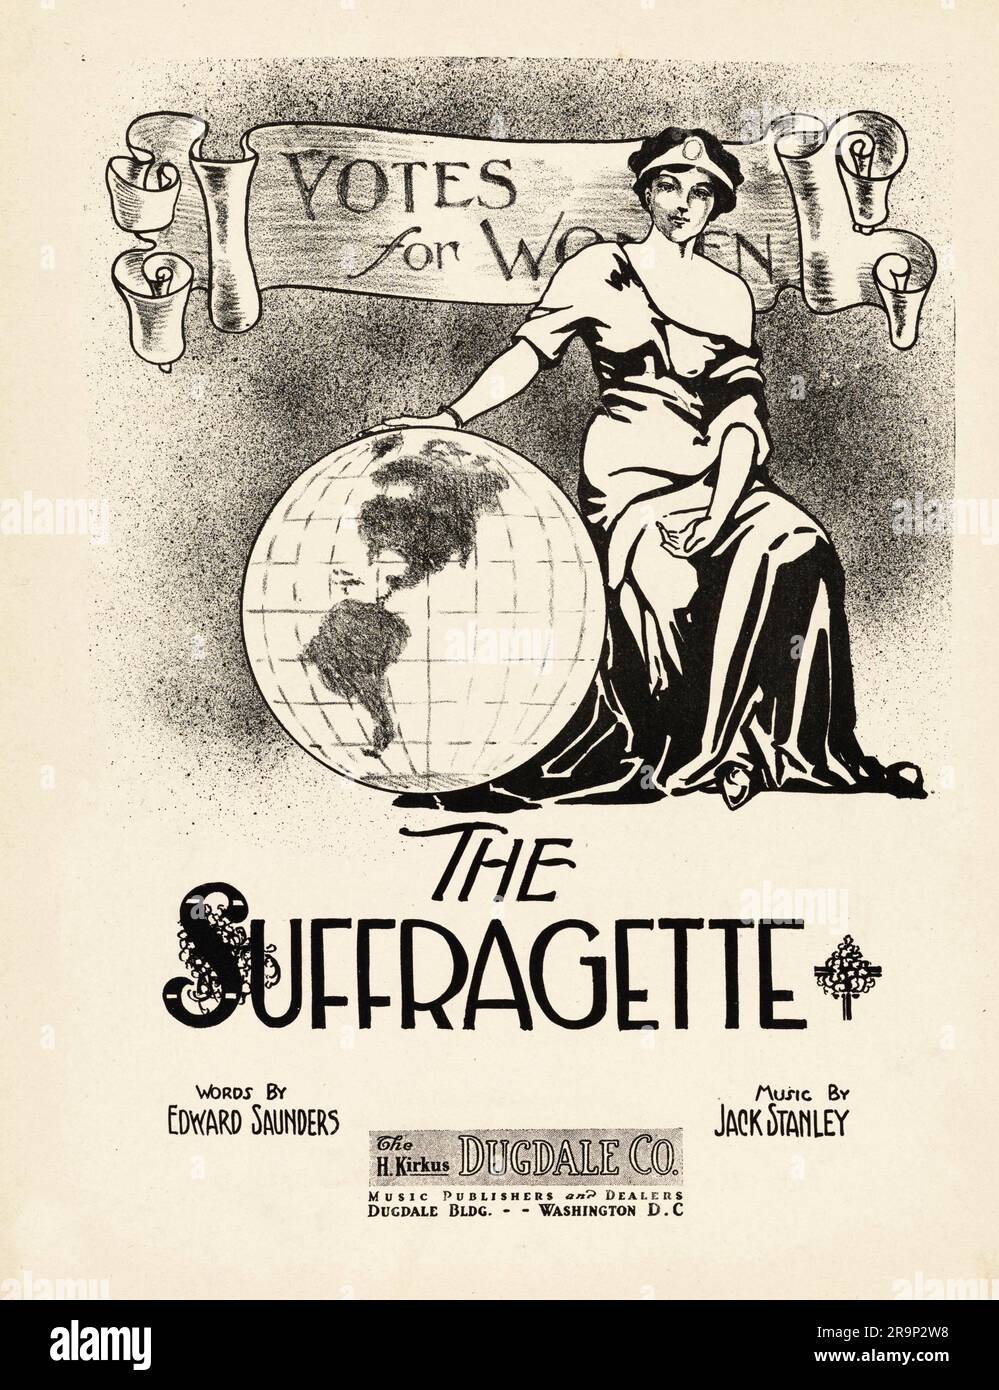 Partitions pour la chanson suffragette, dans le cadre de la campagne votes pour les femmes Banque D'Images